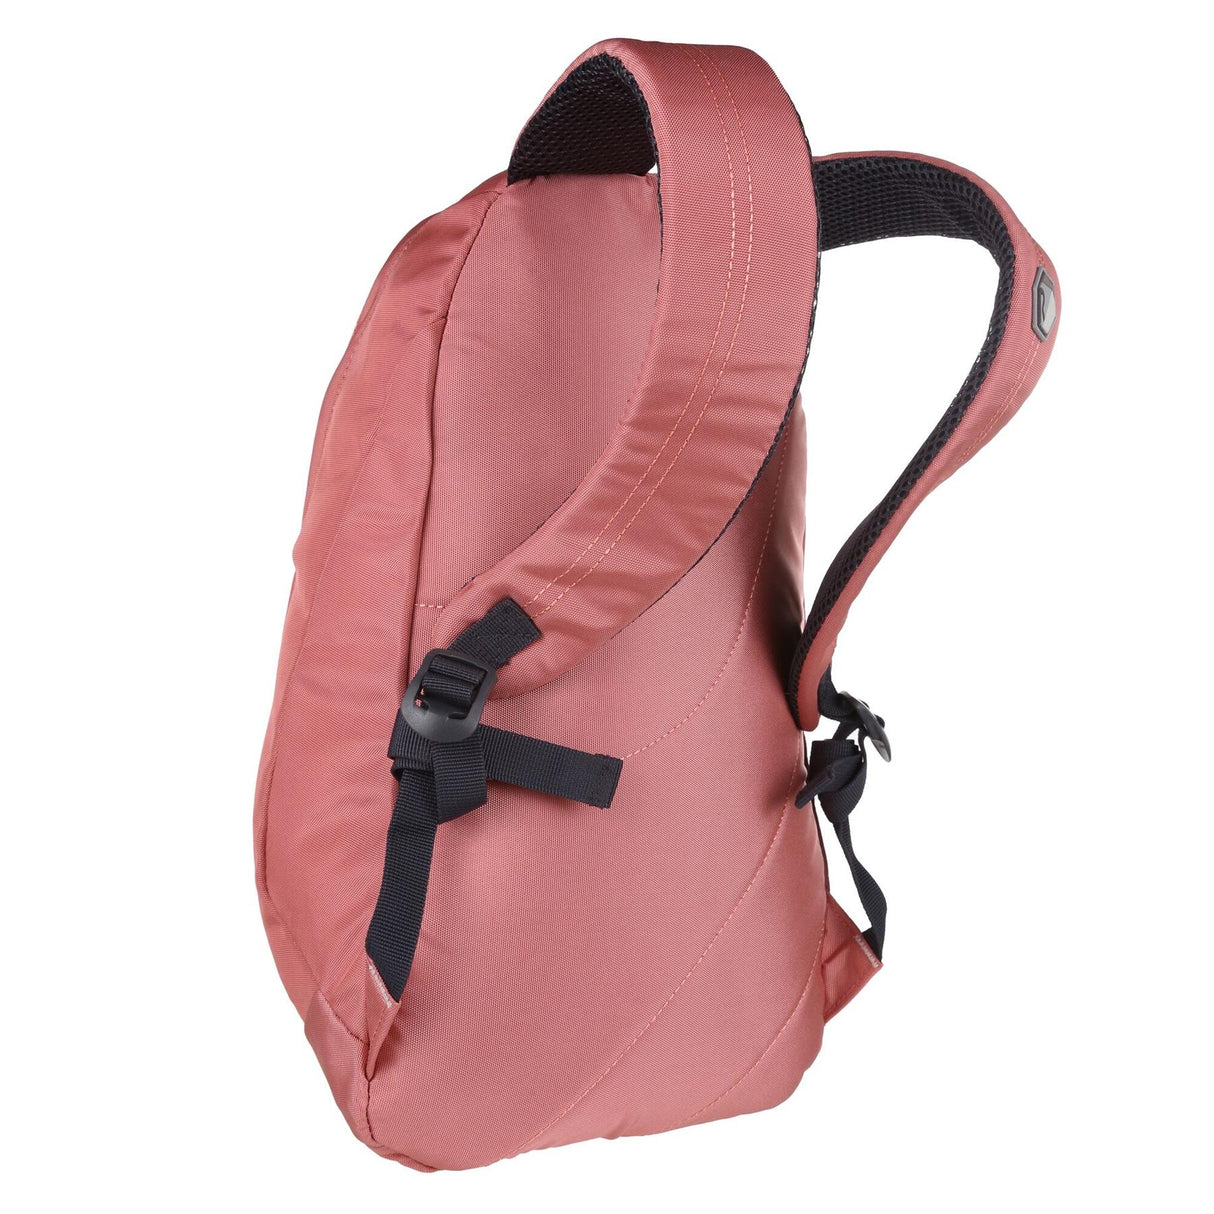 Regatta Bedabase II 15 Litre Backpack